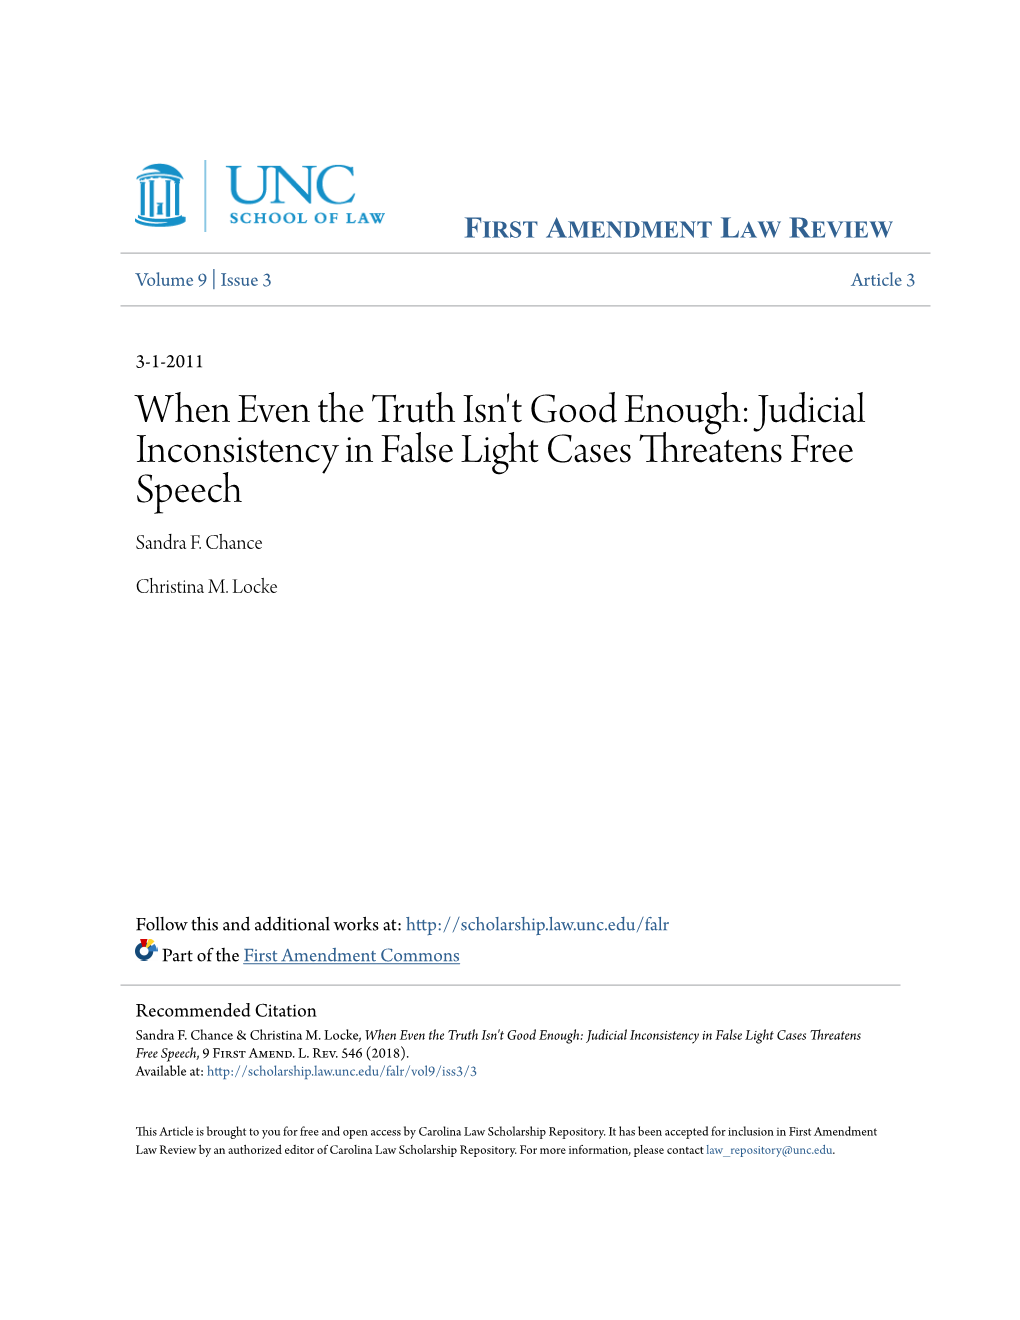 Judicial Inconsistency in False Light Cases Threatens Free Speech Sandra F